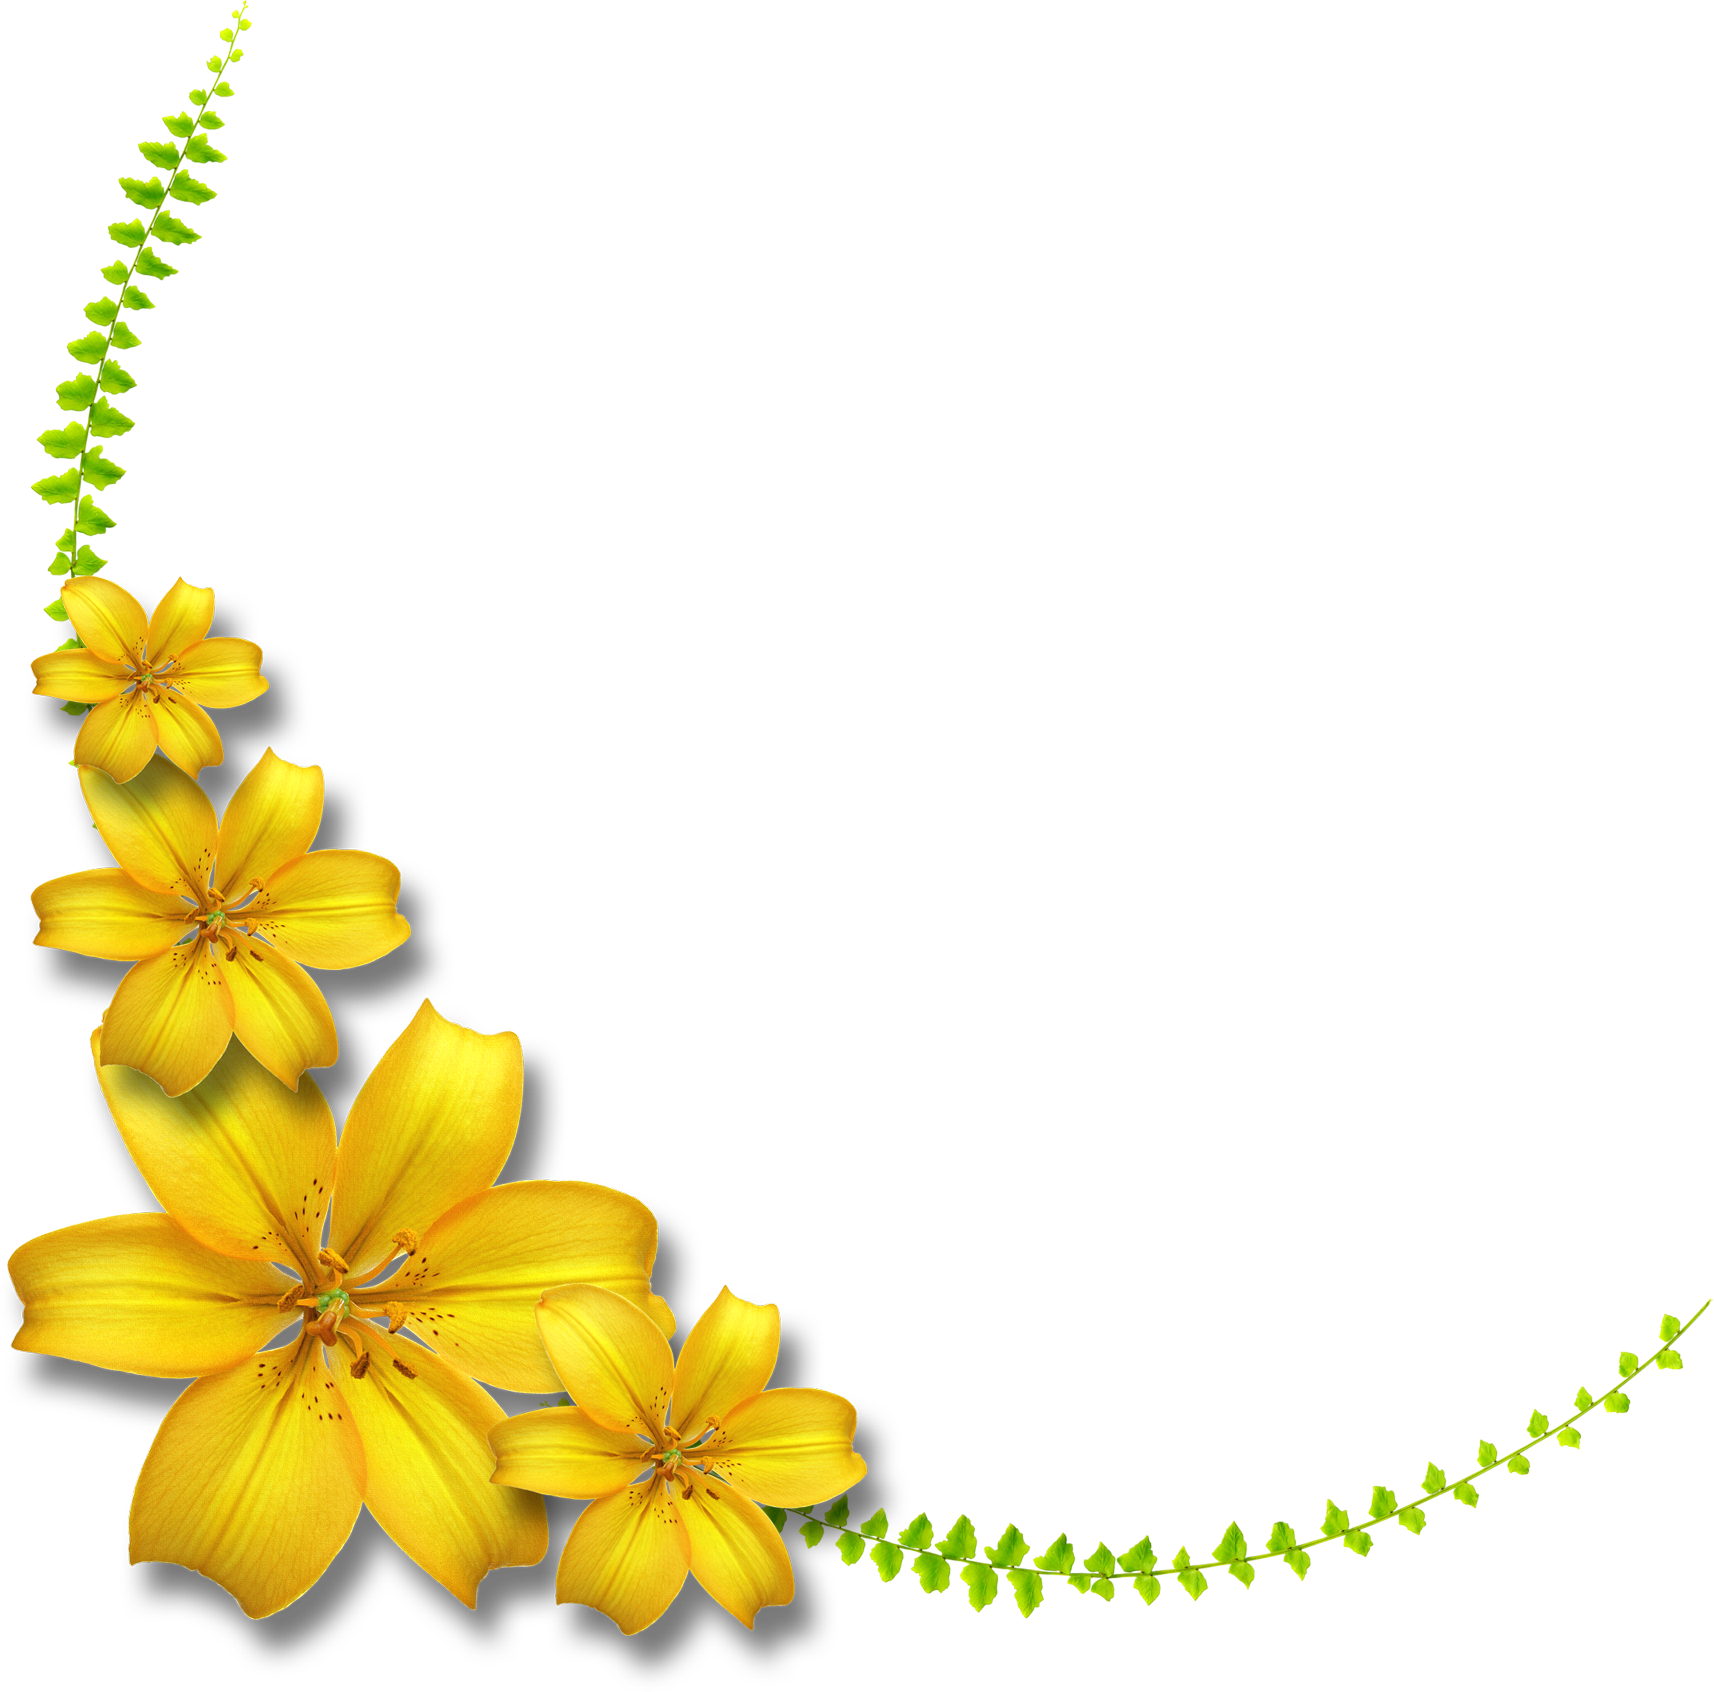 百合 ゆり の花の画像 イラスト フリー素材 No 168 黄色いユリ 葉